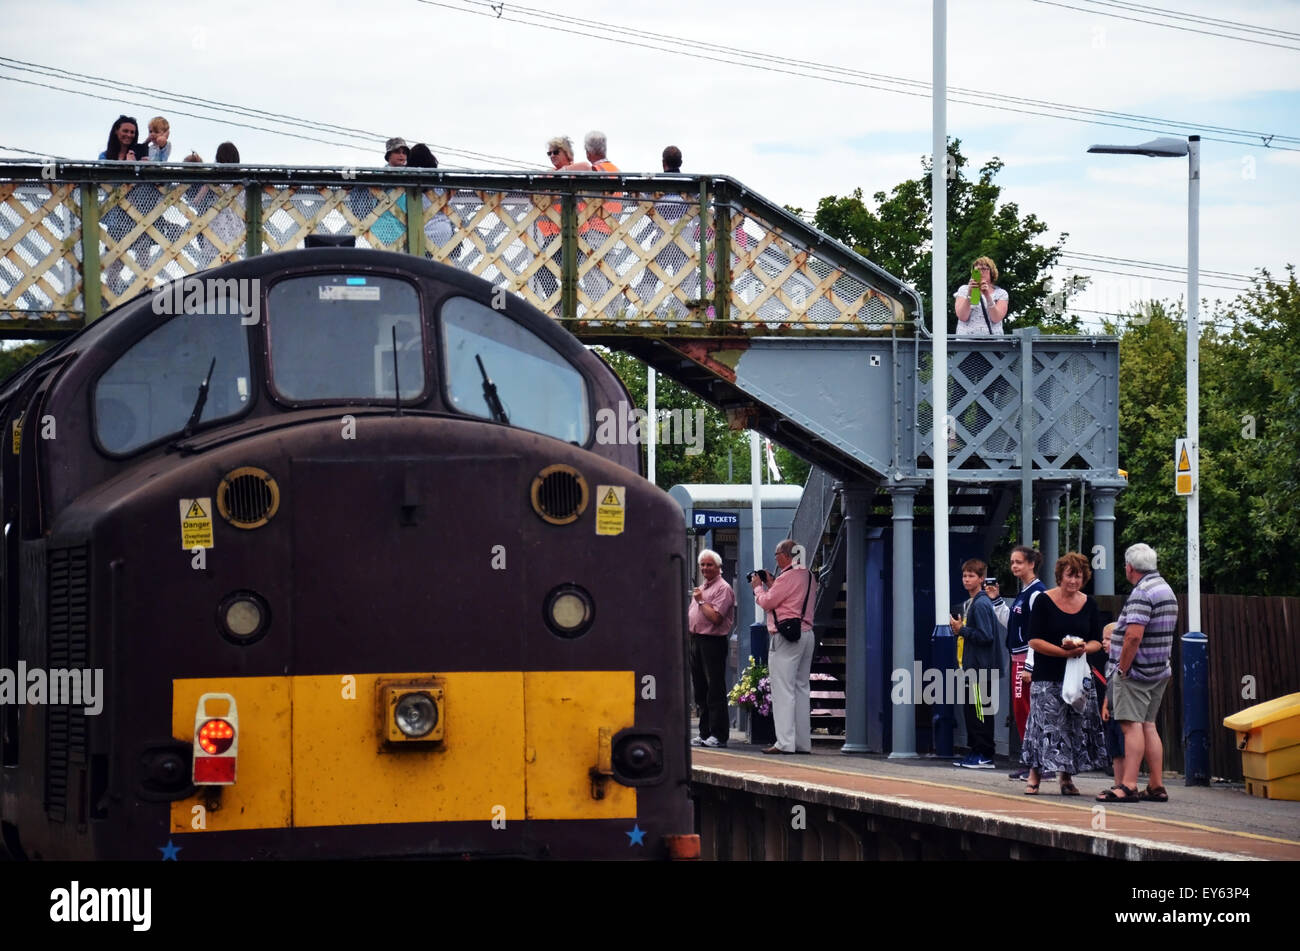 Weymouth, Royaume-Uni. 22 juillet, 2015. Le train à vapeur de Tangmere arrivent à Weymouth, Dorset, UK aujourd'hui 22 juillet 2015, à 13.45. C'est la première des trains à vapeur qui sera arriver cet été. Le Tangmere est l'une des plus aimées stean trains - une bataille d'angleterre class locomotive. Il a été achevé en 1947 à Brighton fonctionne et le nom d'un aérodrome militaire dans le Sussex. Son utilisation a été pour l'ensemble de la Southern Railway. Credit : Grahame Howard/Alamy Live News Banque D'Images